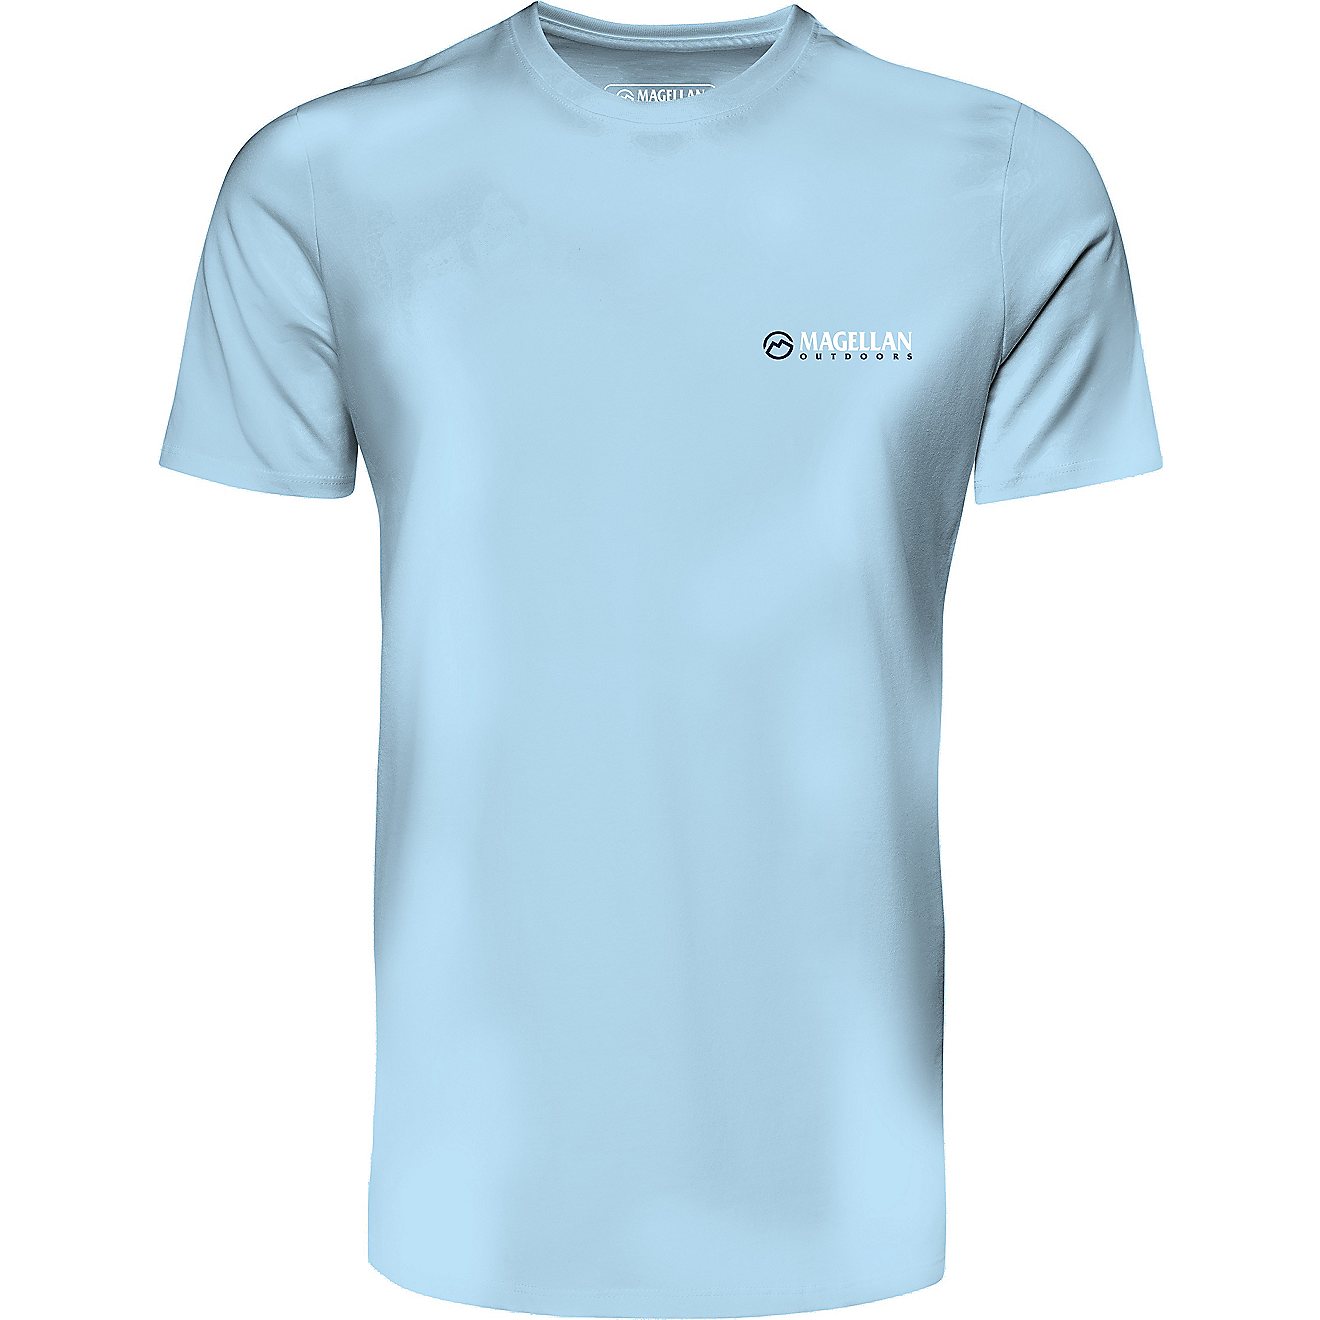 Magellan Outdoors Men's Pro Beach Short Sleeve T-shirt                                                                           - view number 1